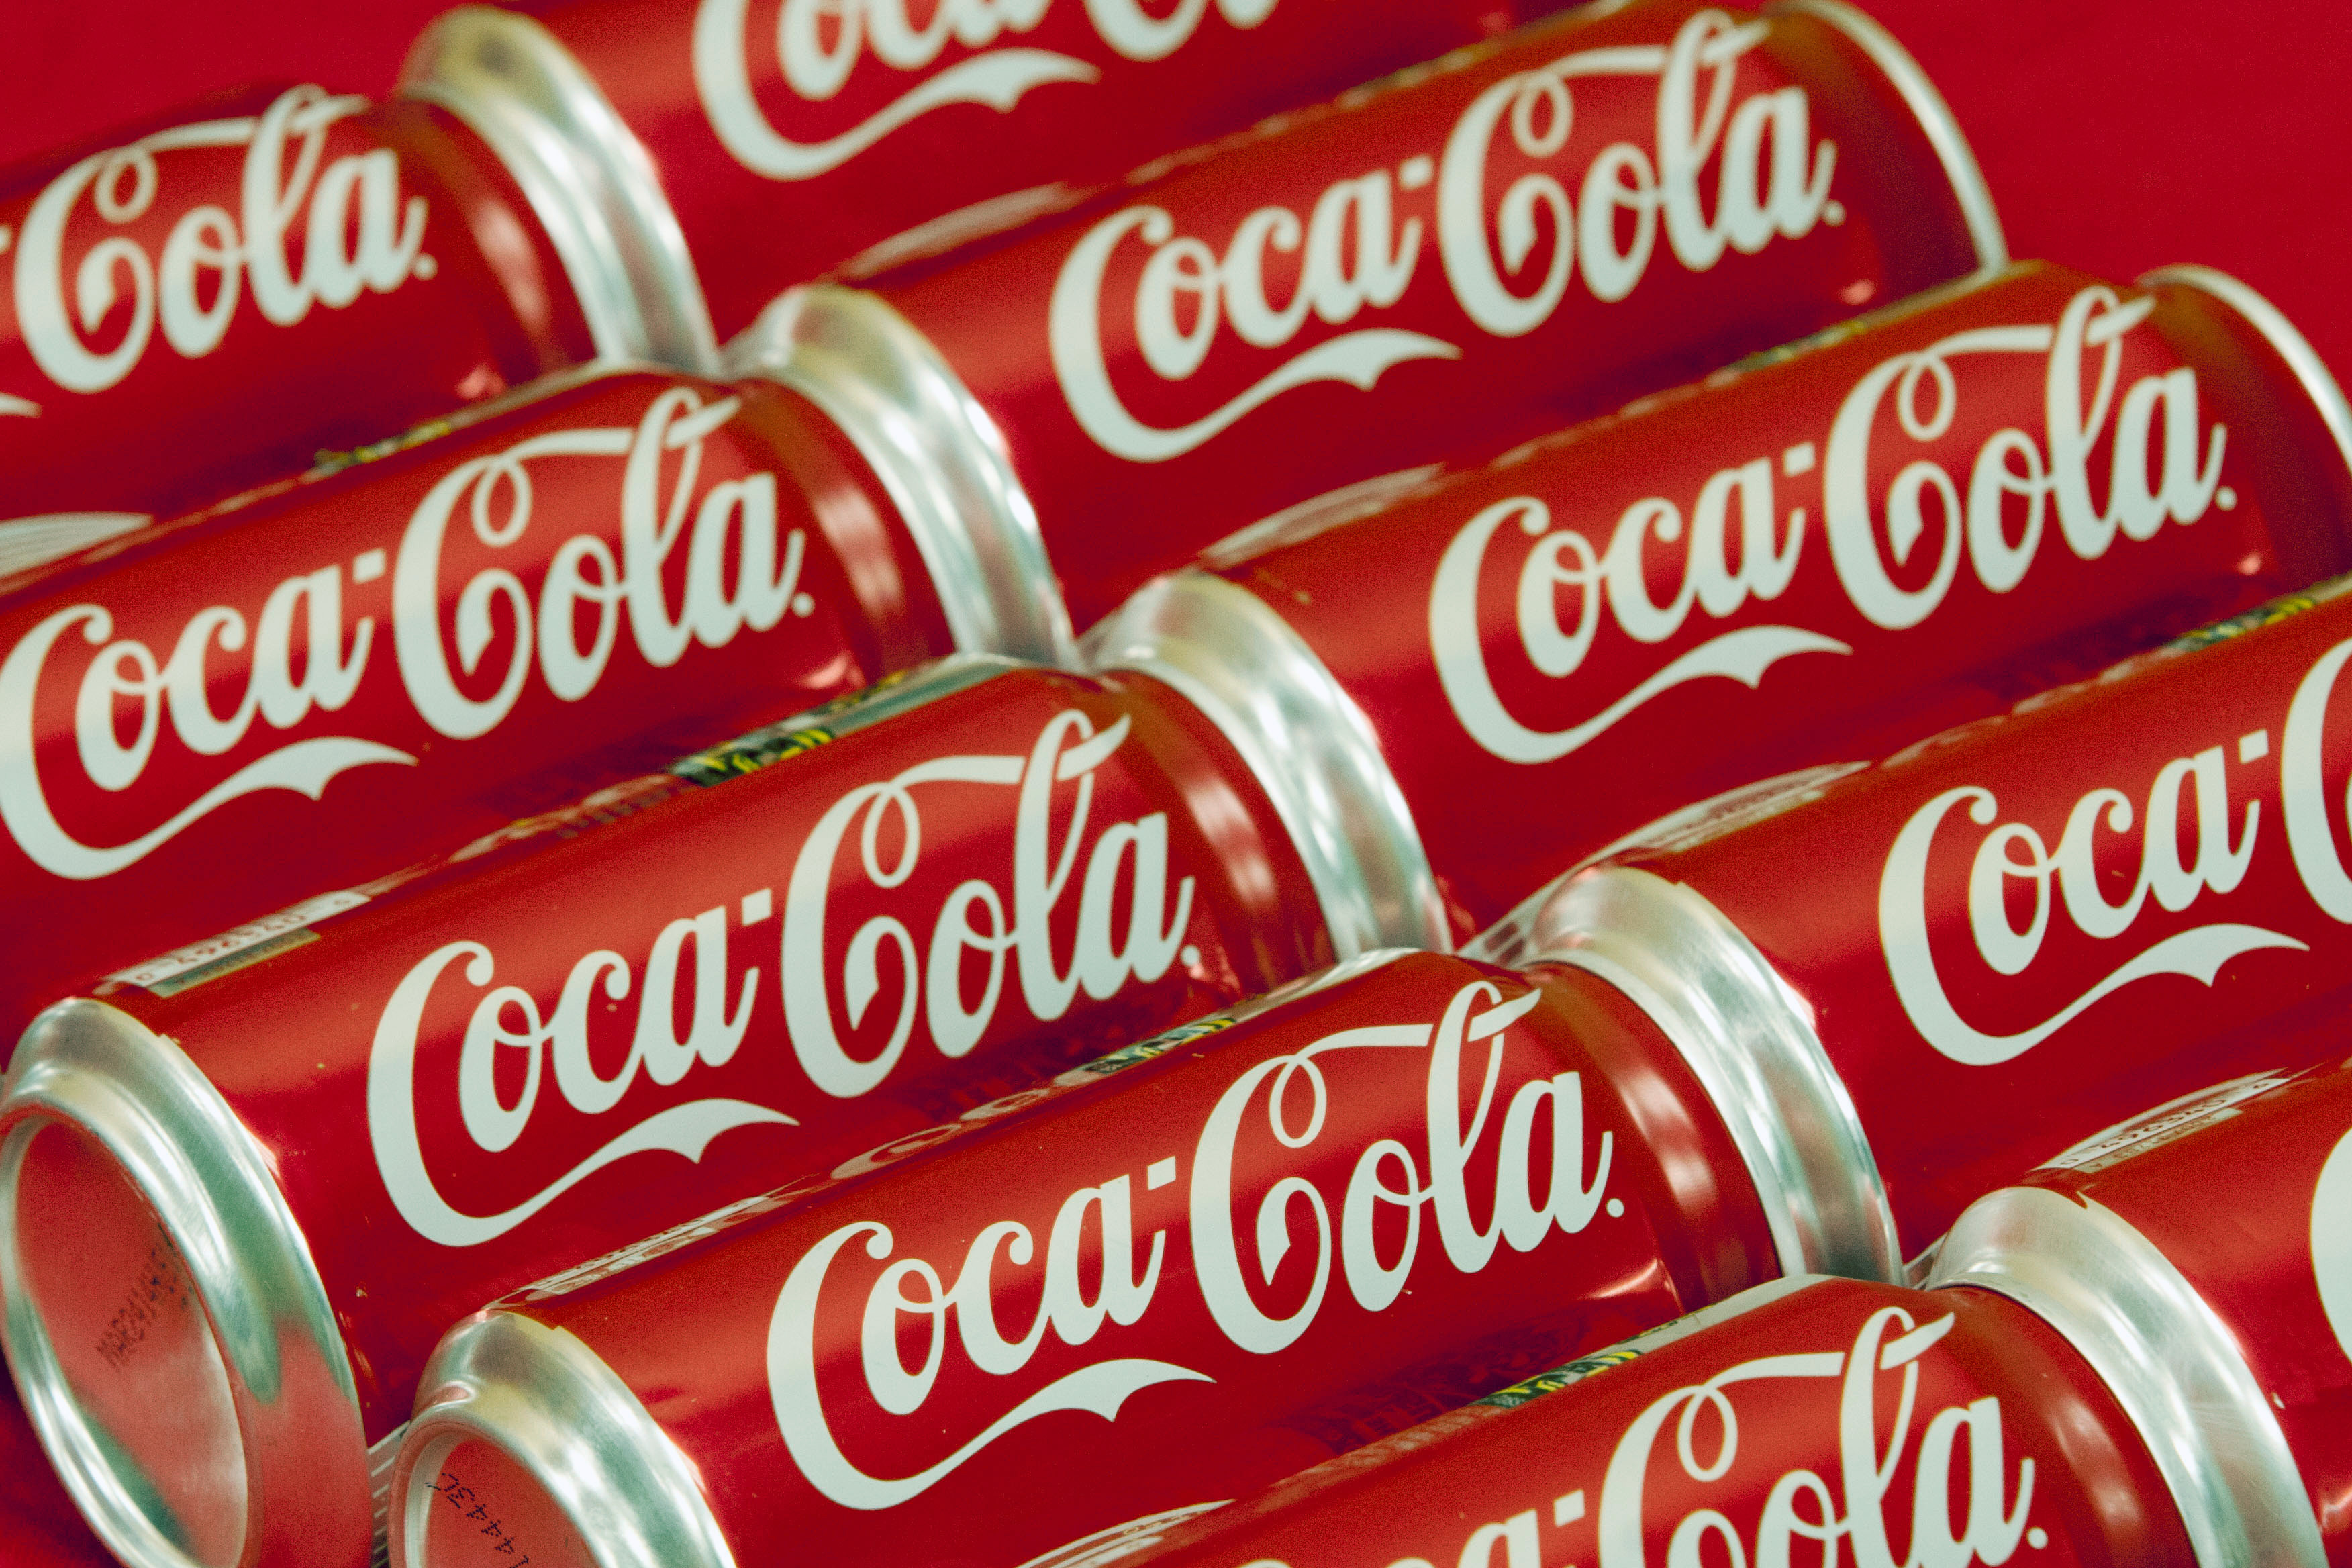 Coca-Cola implică artişti, vloggeri şi vedete în campanii pentru a atinge cât mai multe categorii de consumatori